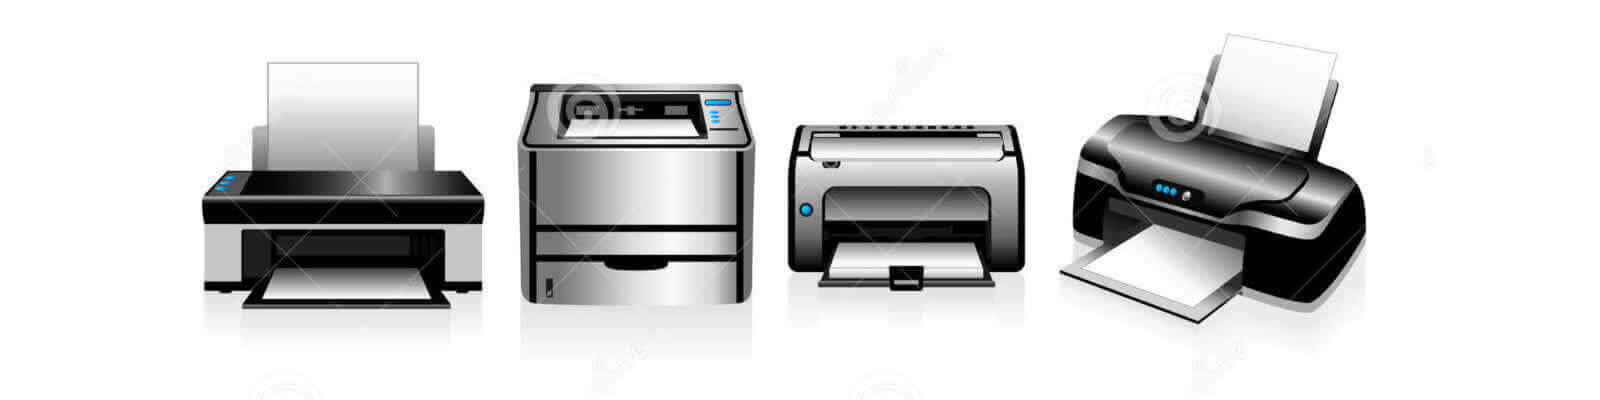 Outsourcing de Impressoras HP